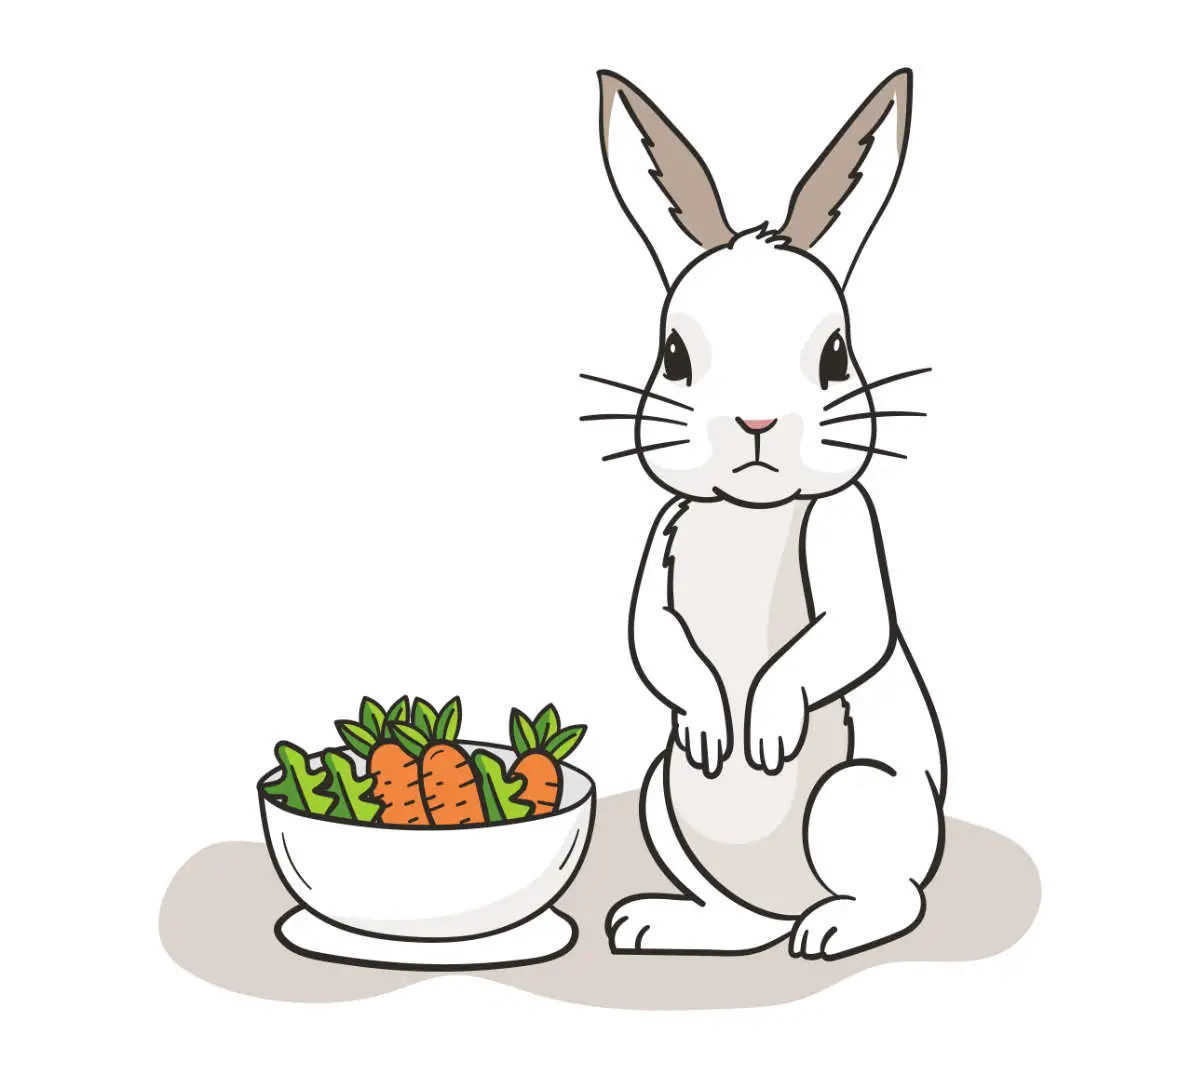 Wenn dein Kaninchen stirbt, wird es im ersten Schritt keinen Appetit mehr haben